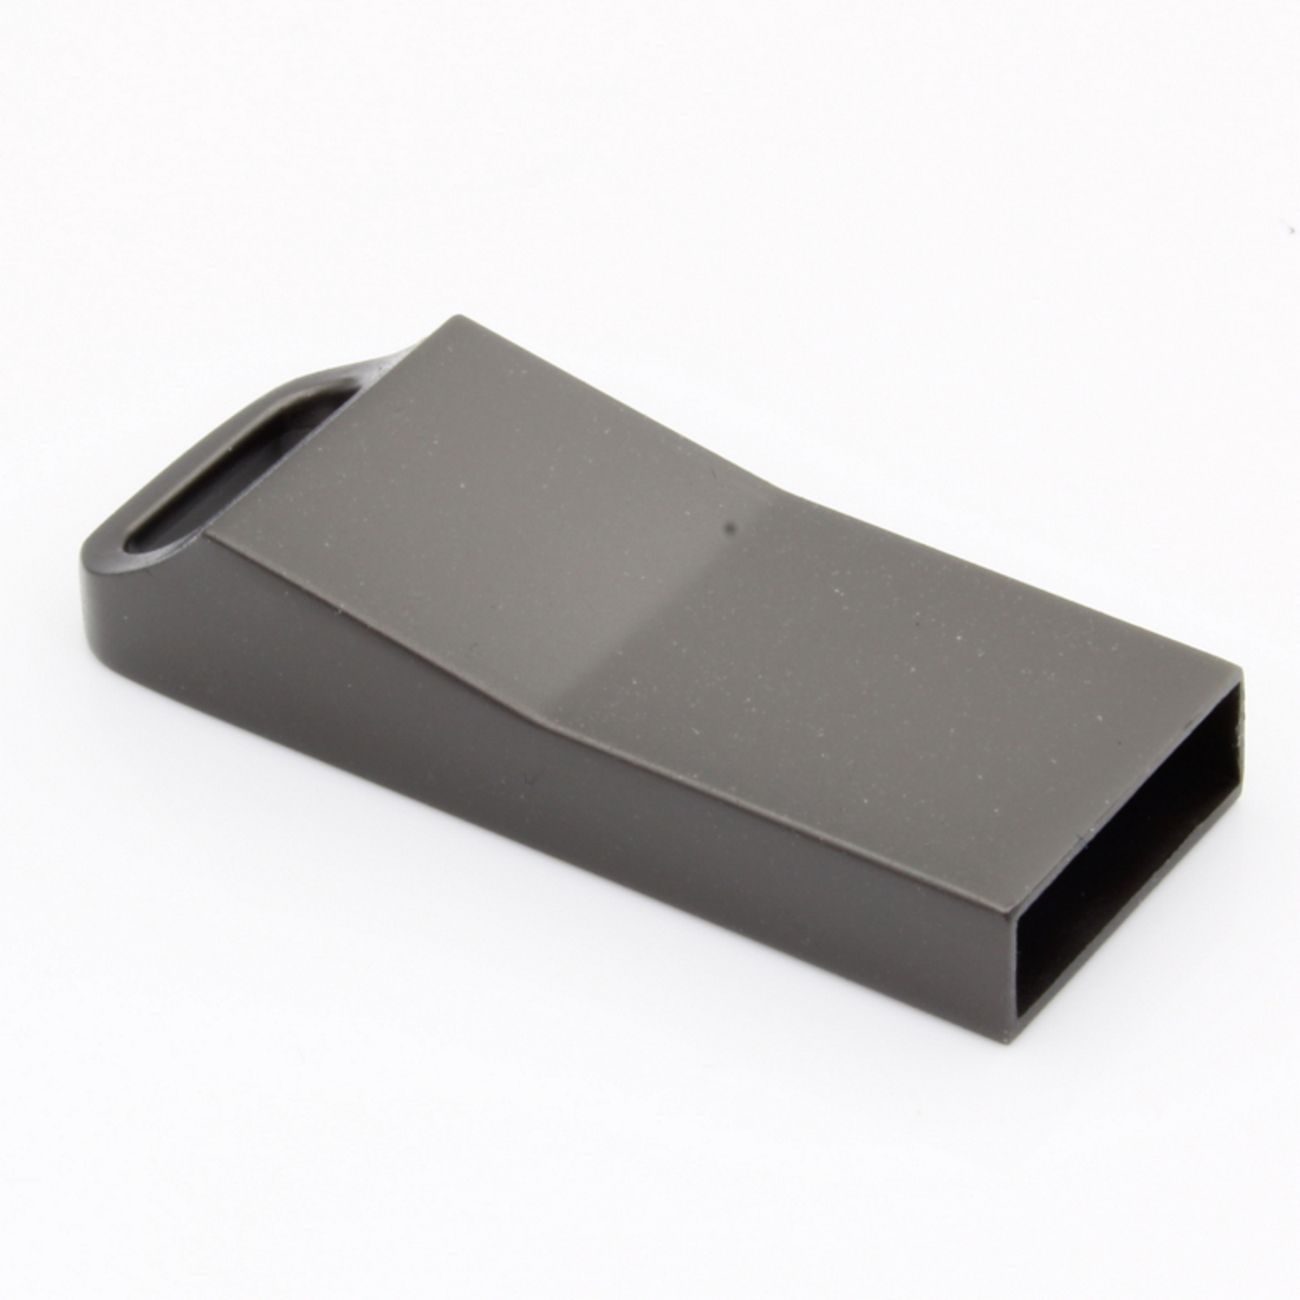 ME15 1 GERMANY USB-Stick ®Metall GB) (Graumetalic, USB